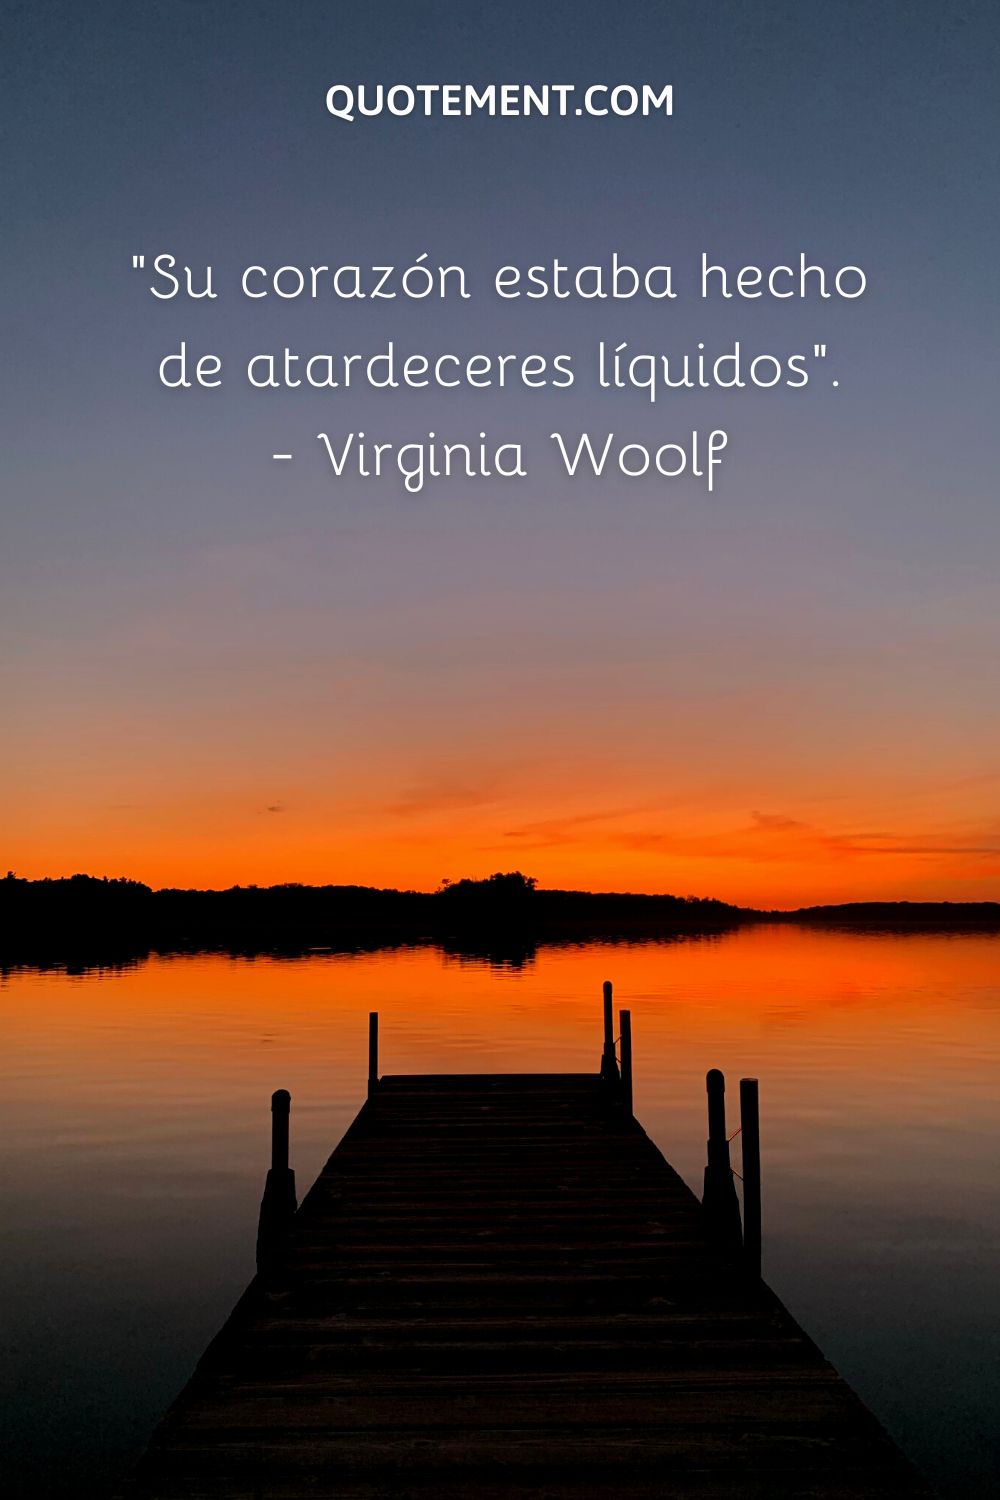 "Su corazón estaba hecho de atardeceres líquidos". - Virginia Woolf